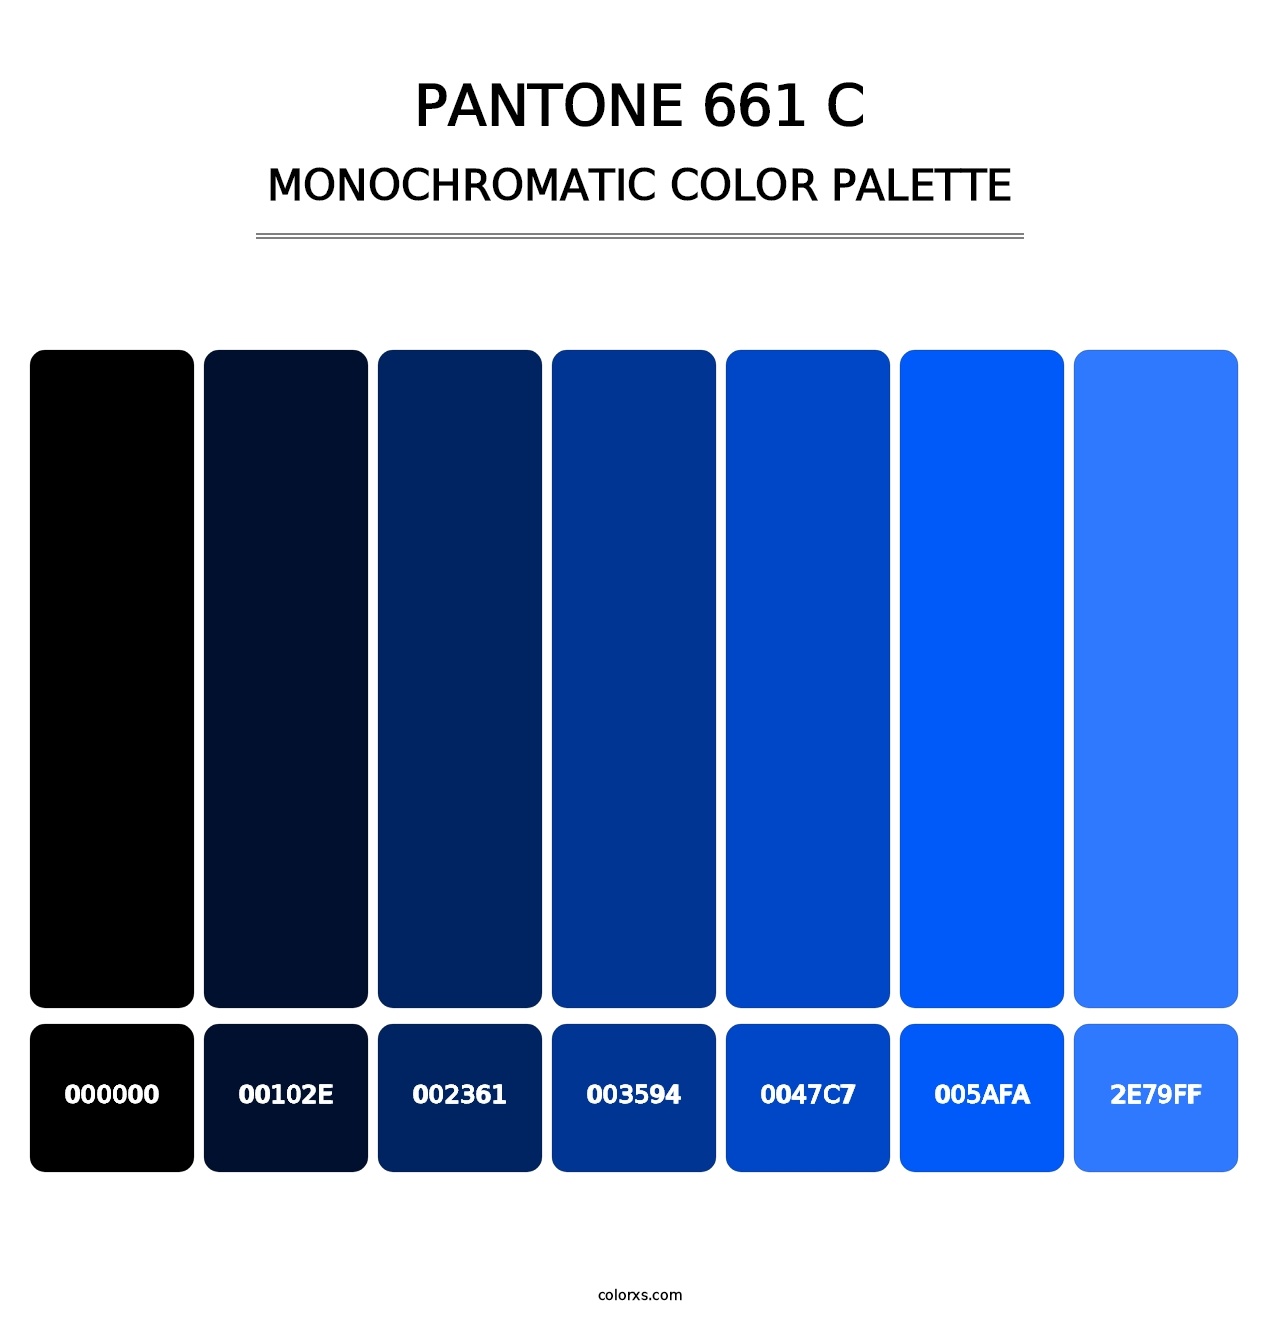 PANTONE 661 C - Monochromatic Color Palette